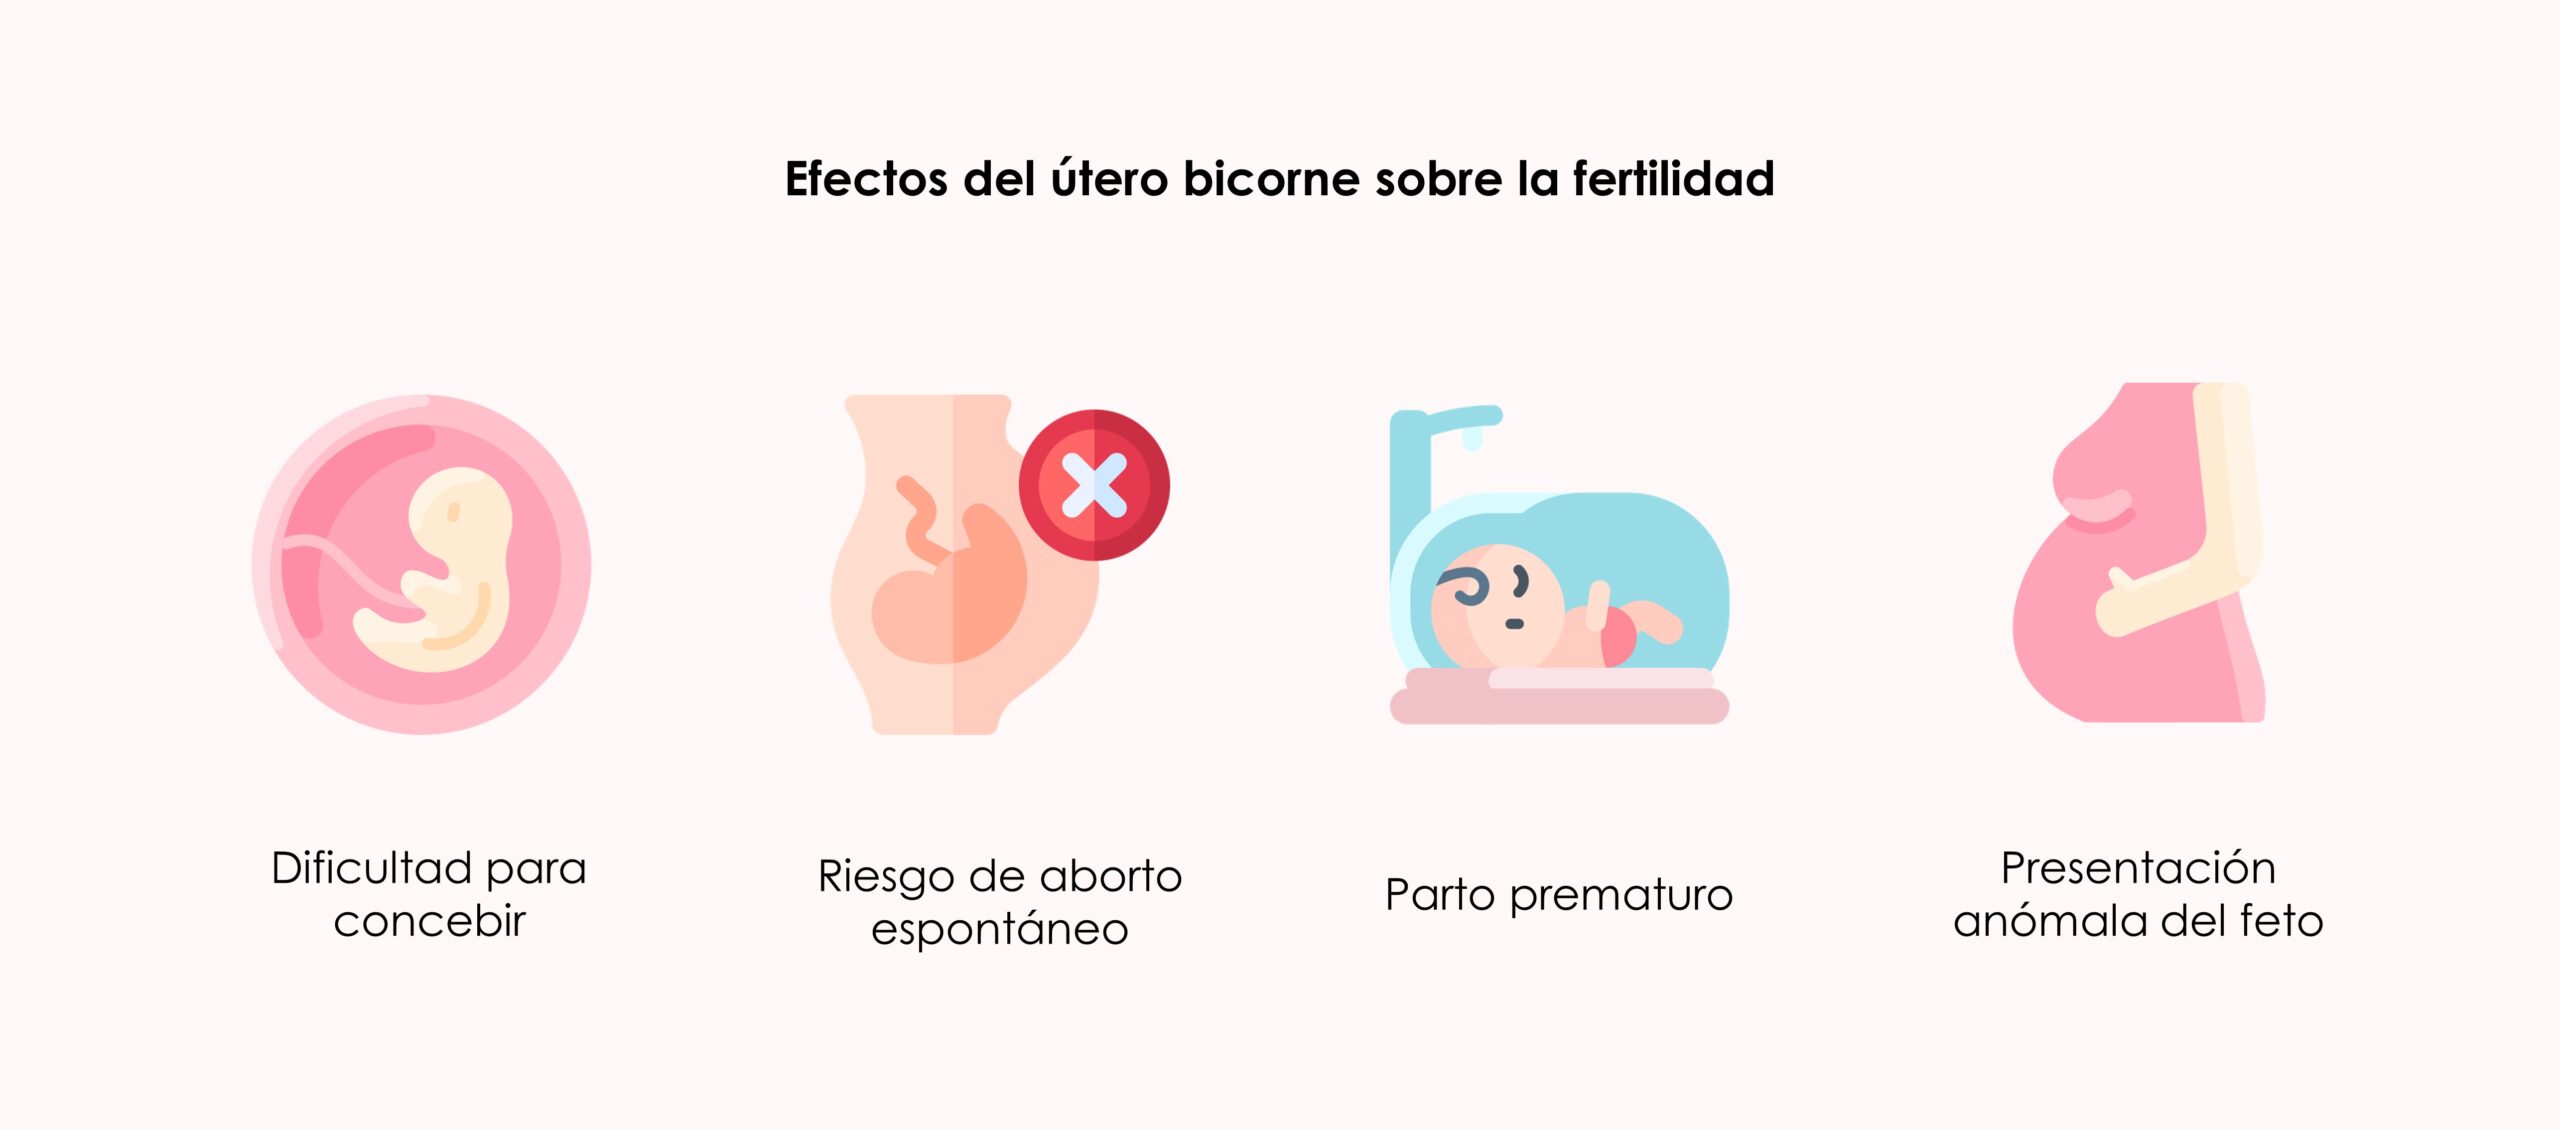 Útero bicorne, qué es y cómo influye en la fertilidad